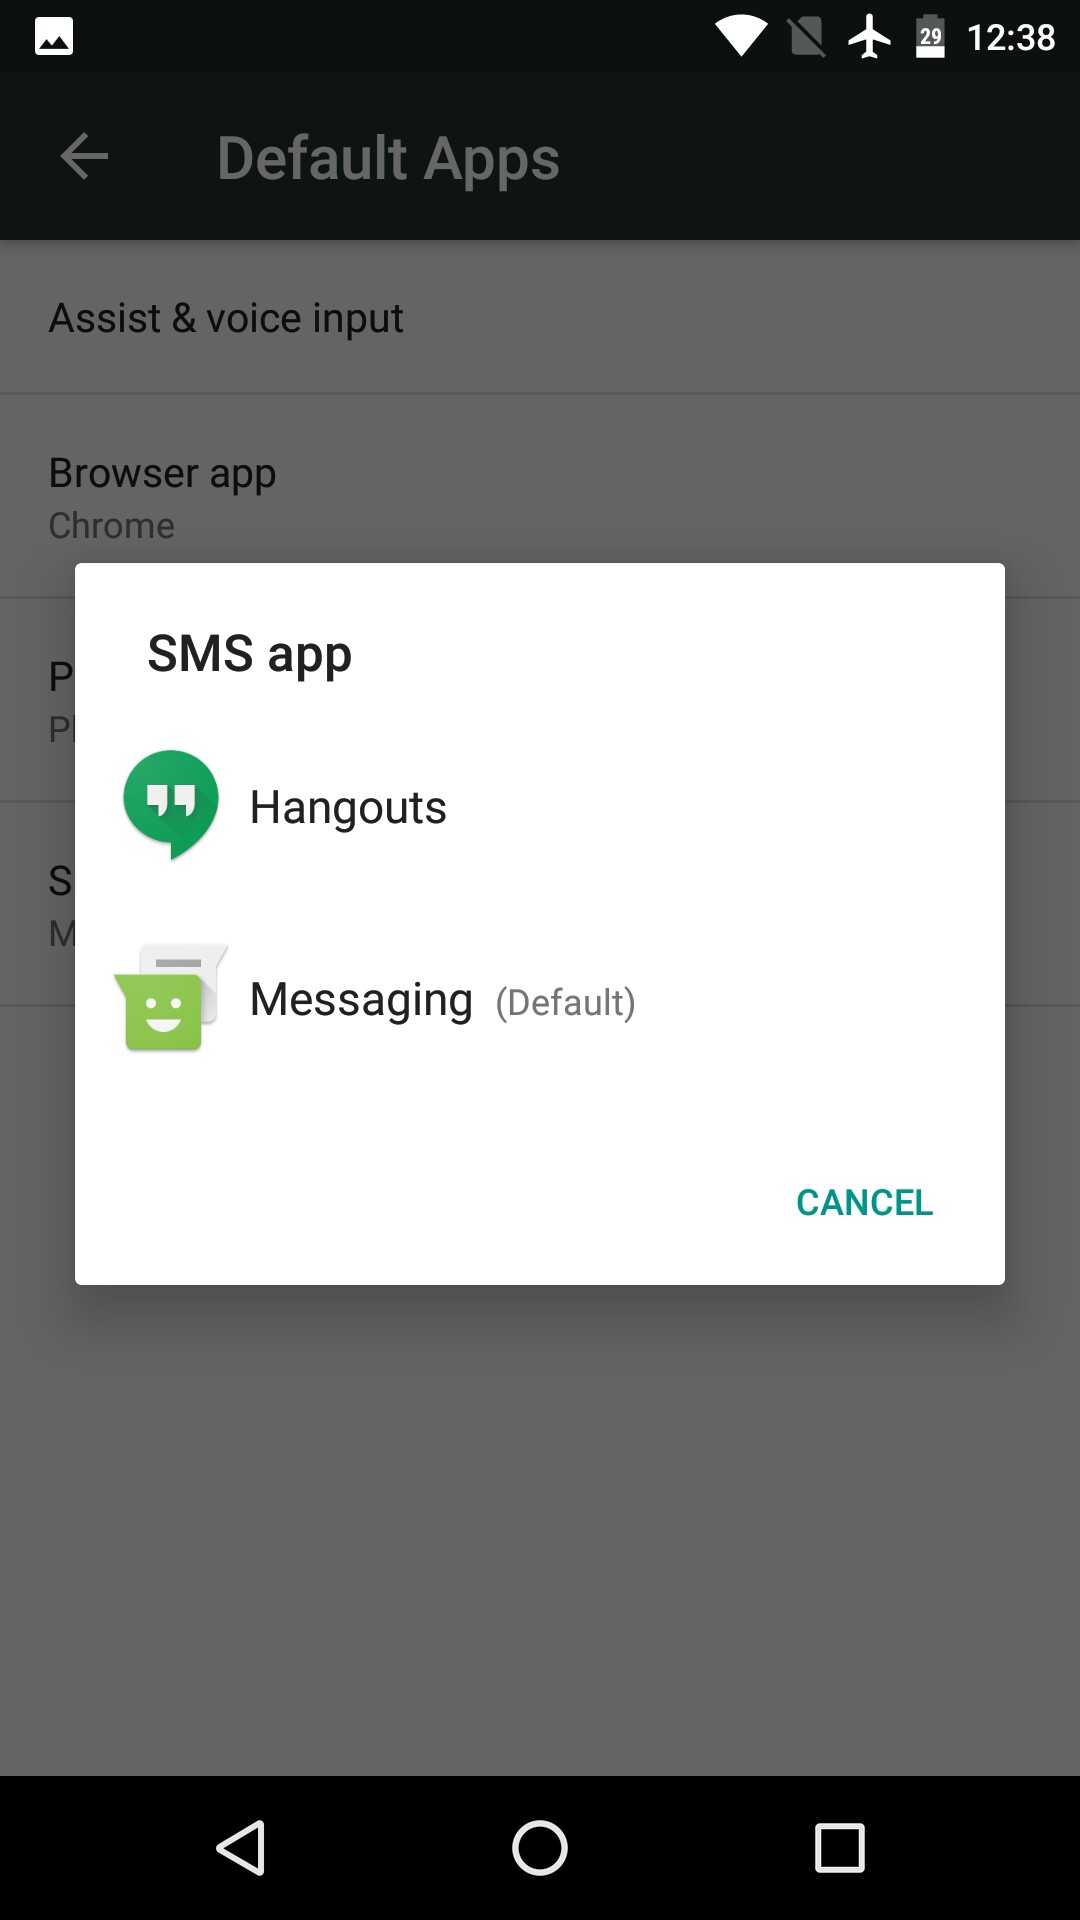 RE: Làm thế nào để chuyển tin nhắn từ hangouts sang ứng dụng messenger?